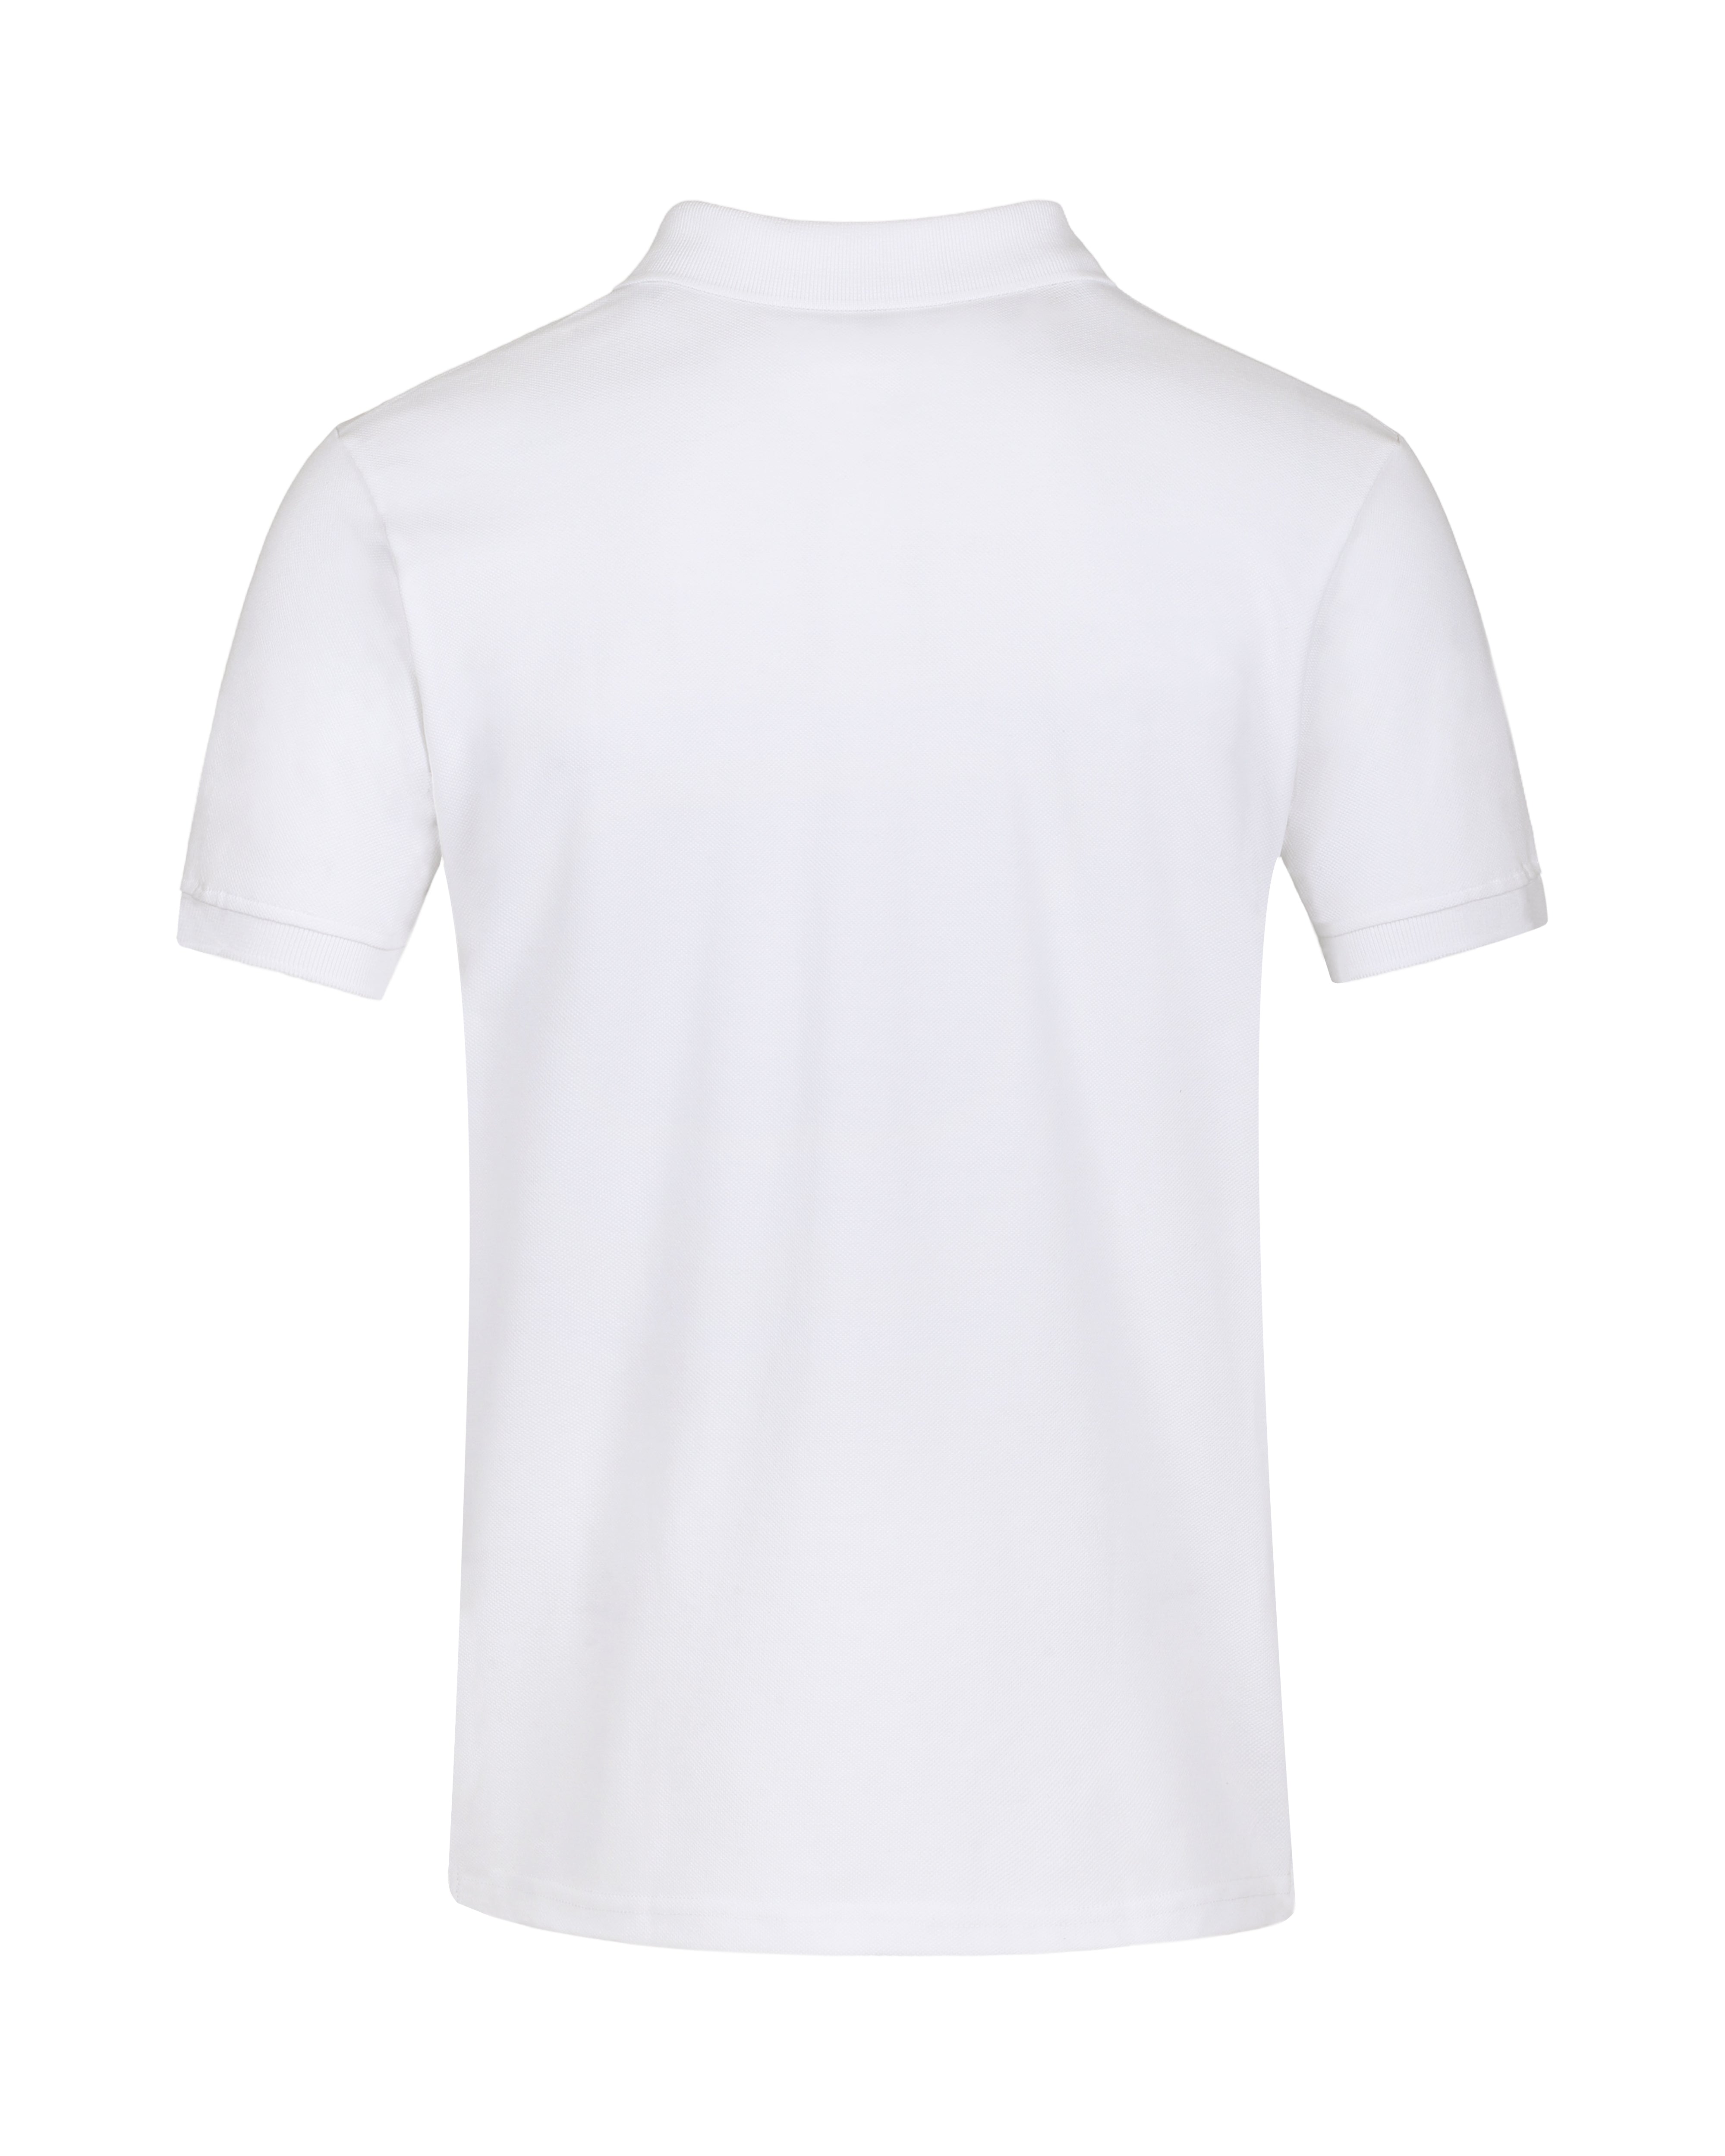 White Color Premium Cotton T-Shirt